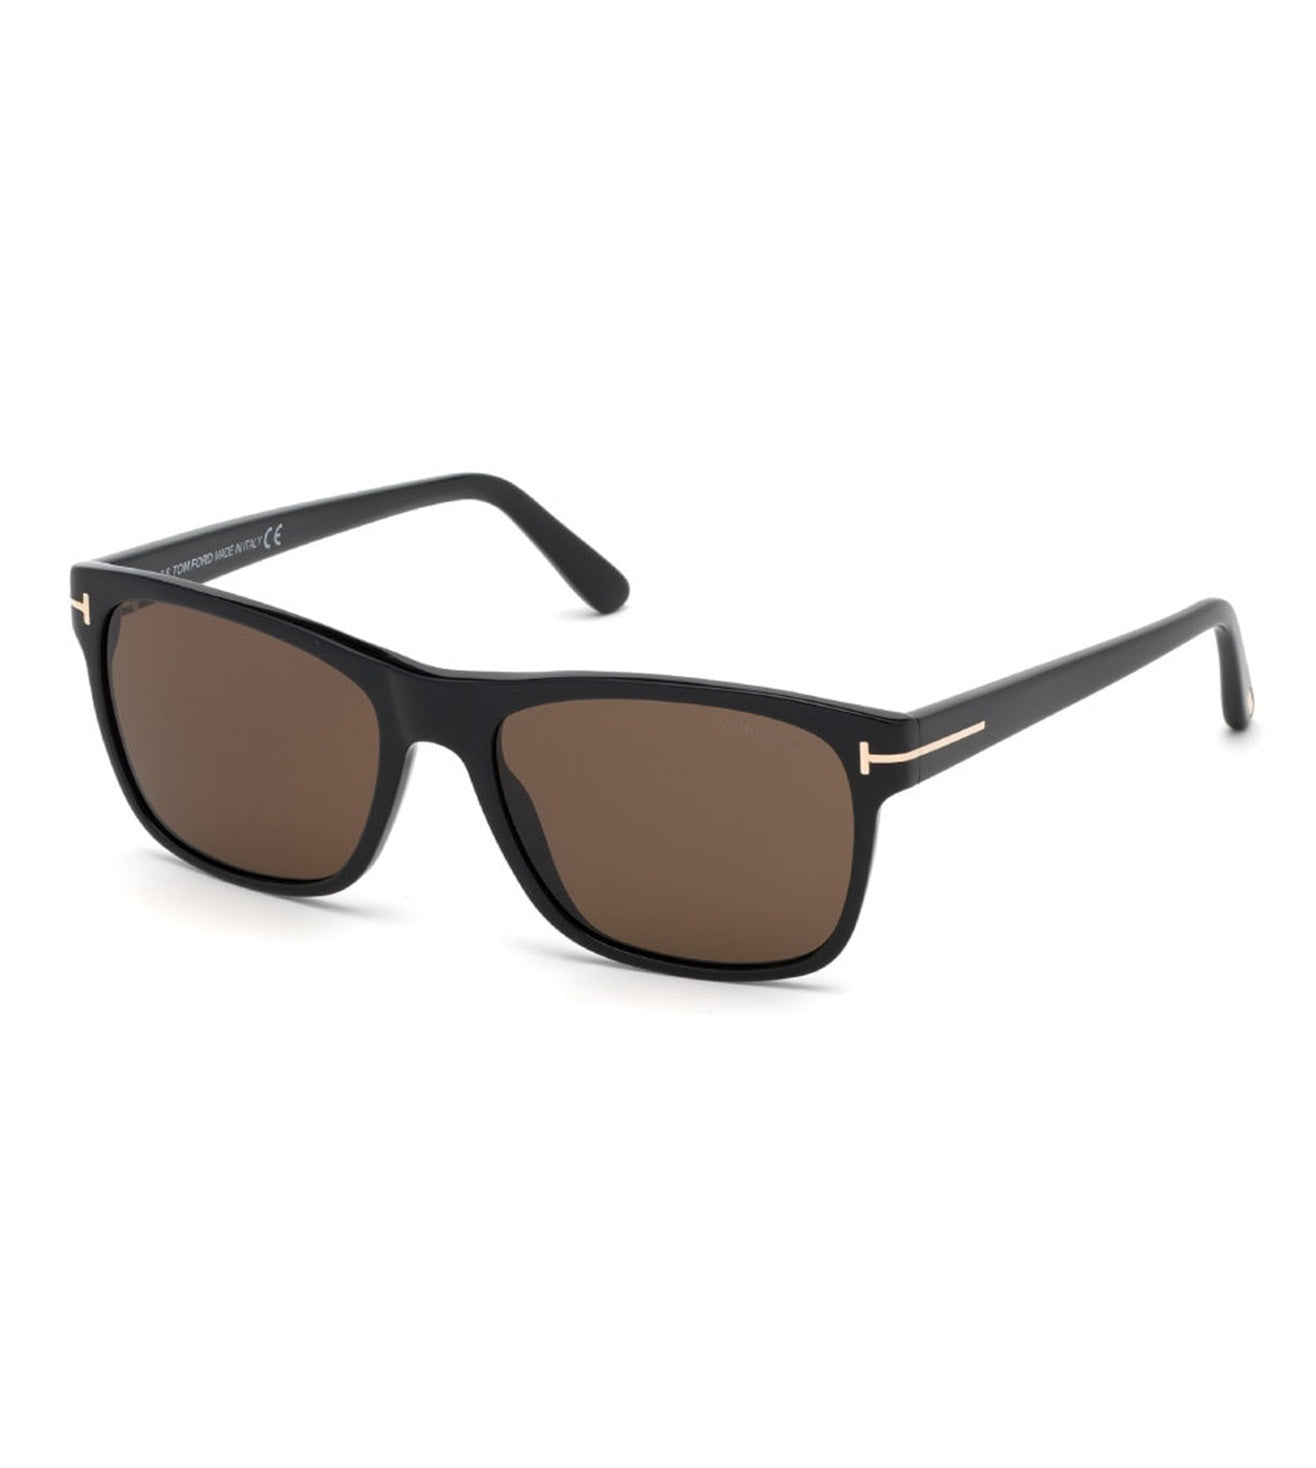 Tom Ford Men's Brown Rectangular Sunglasses